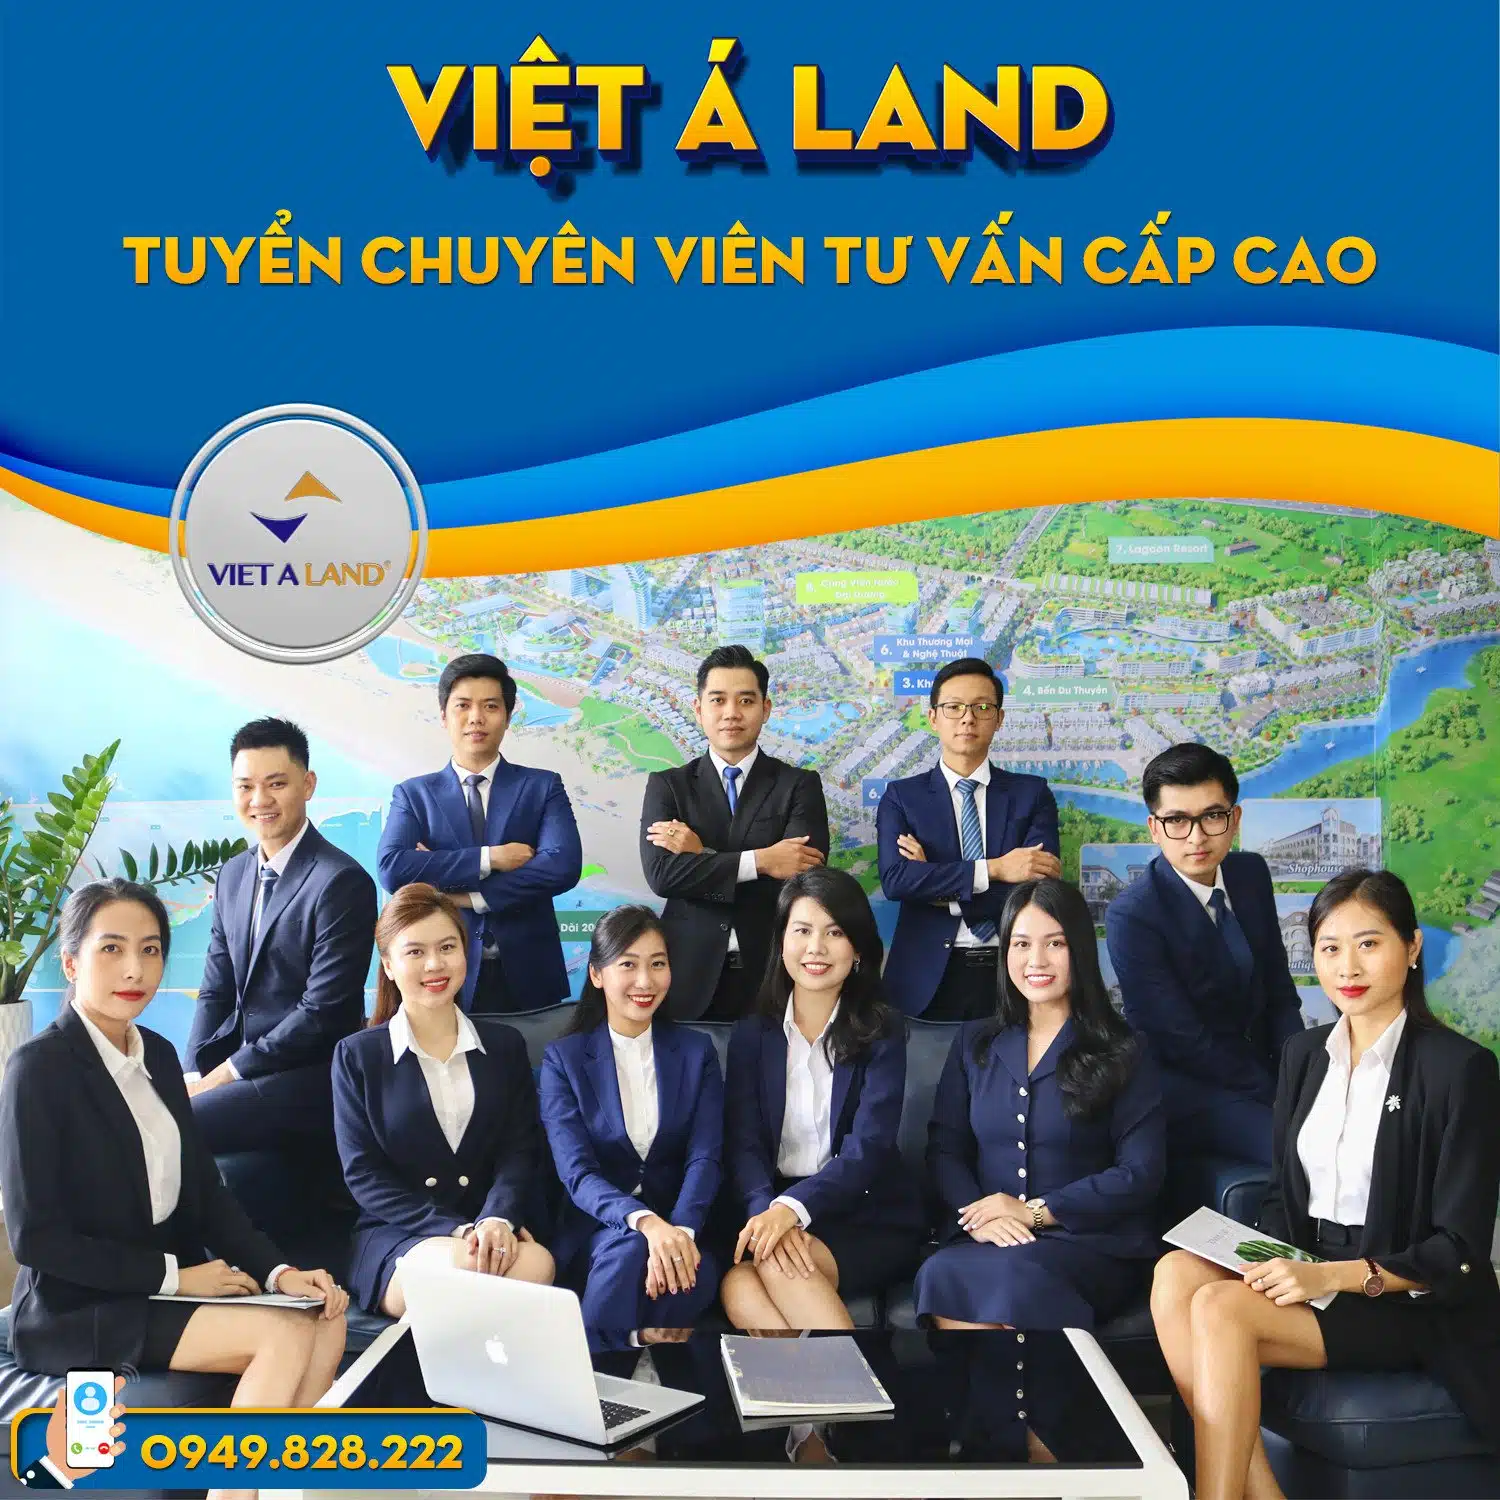 Việt Á Land tuyển dụng